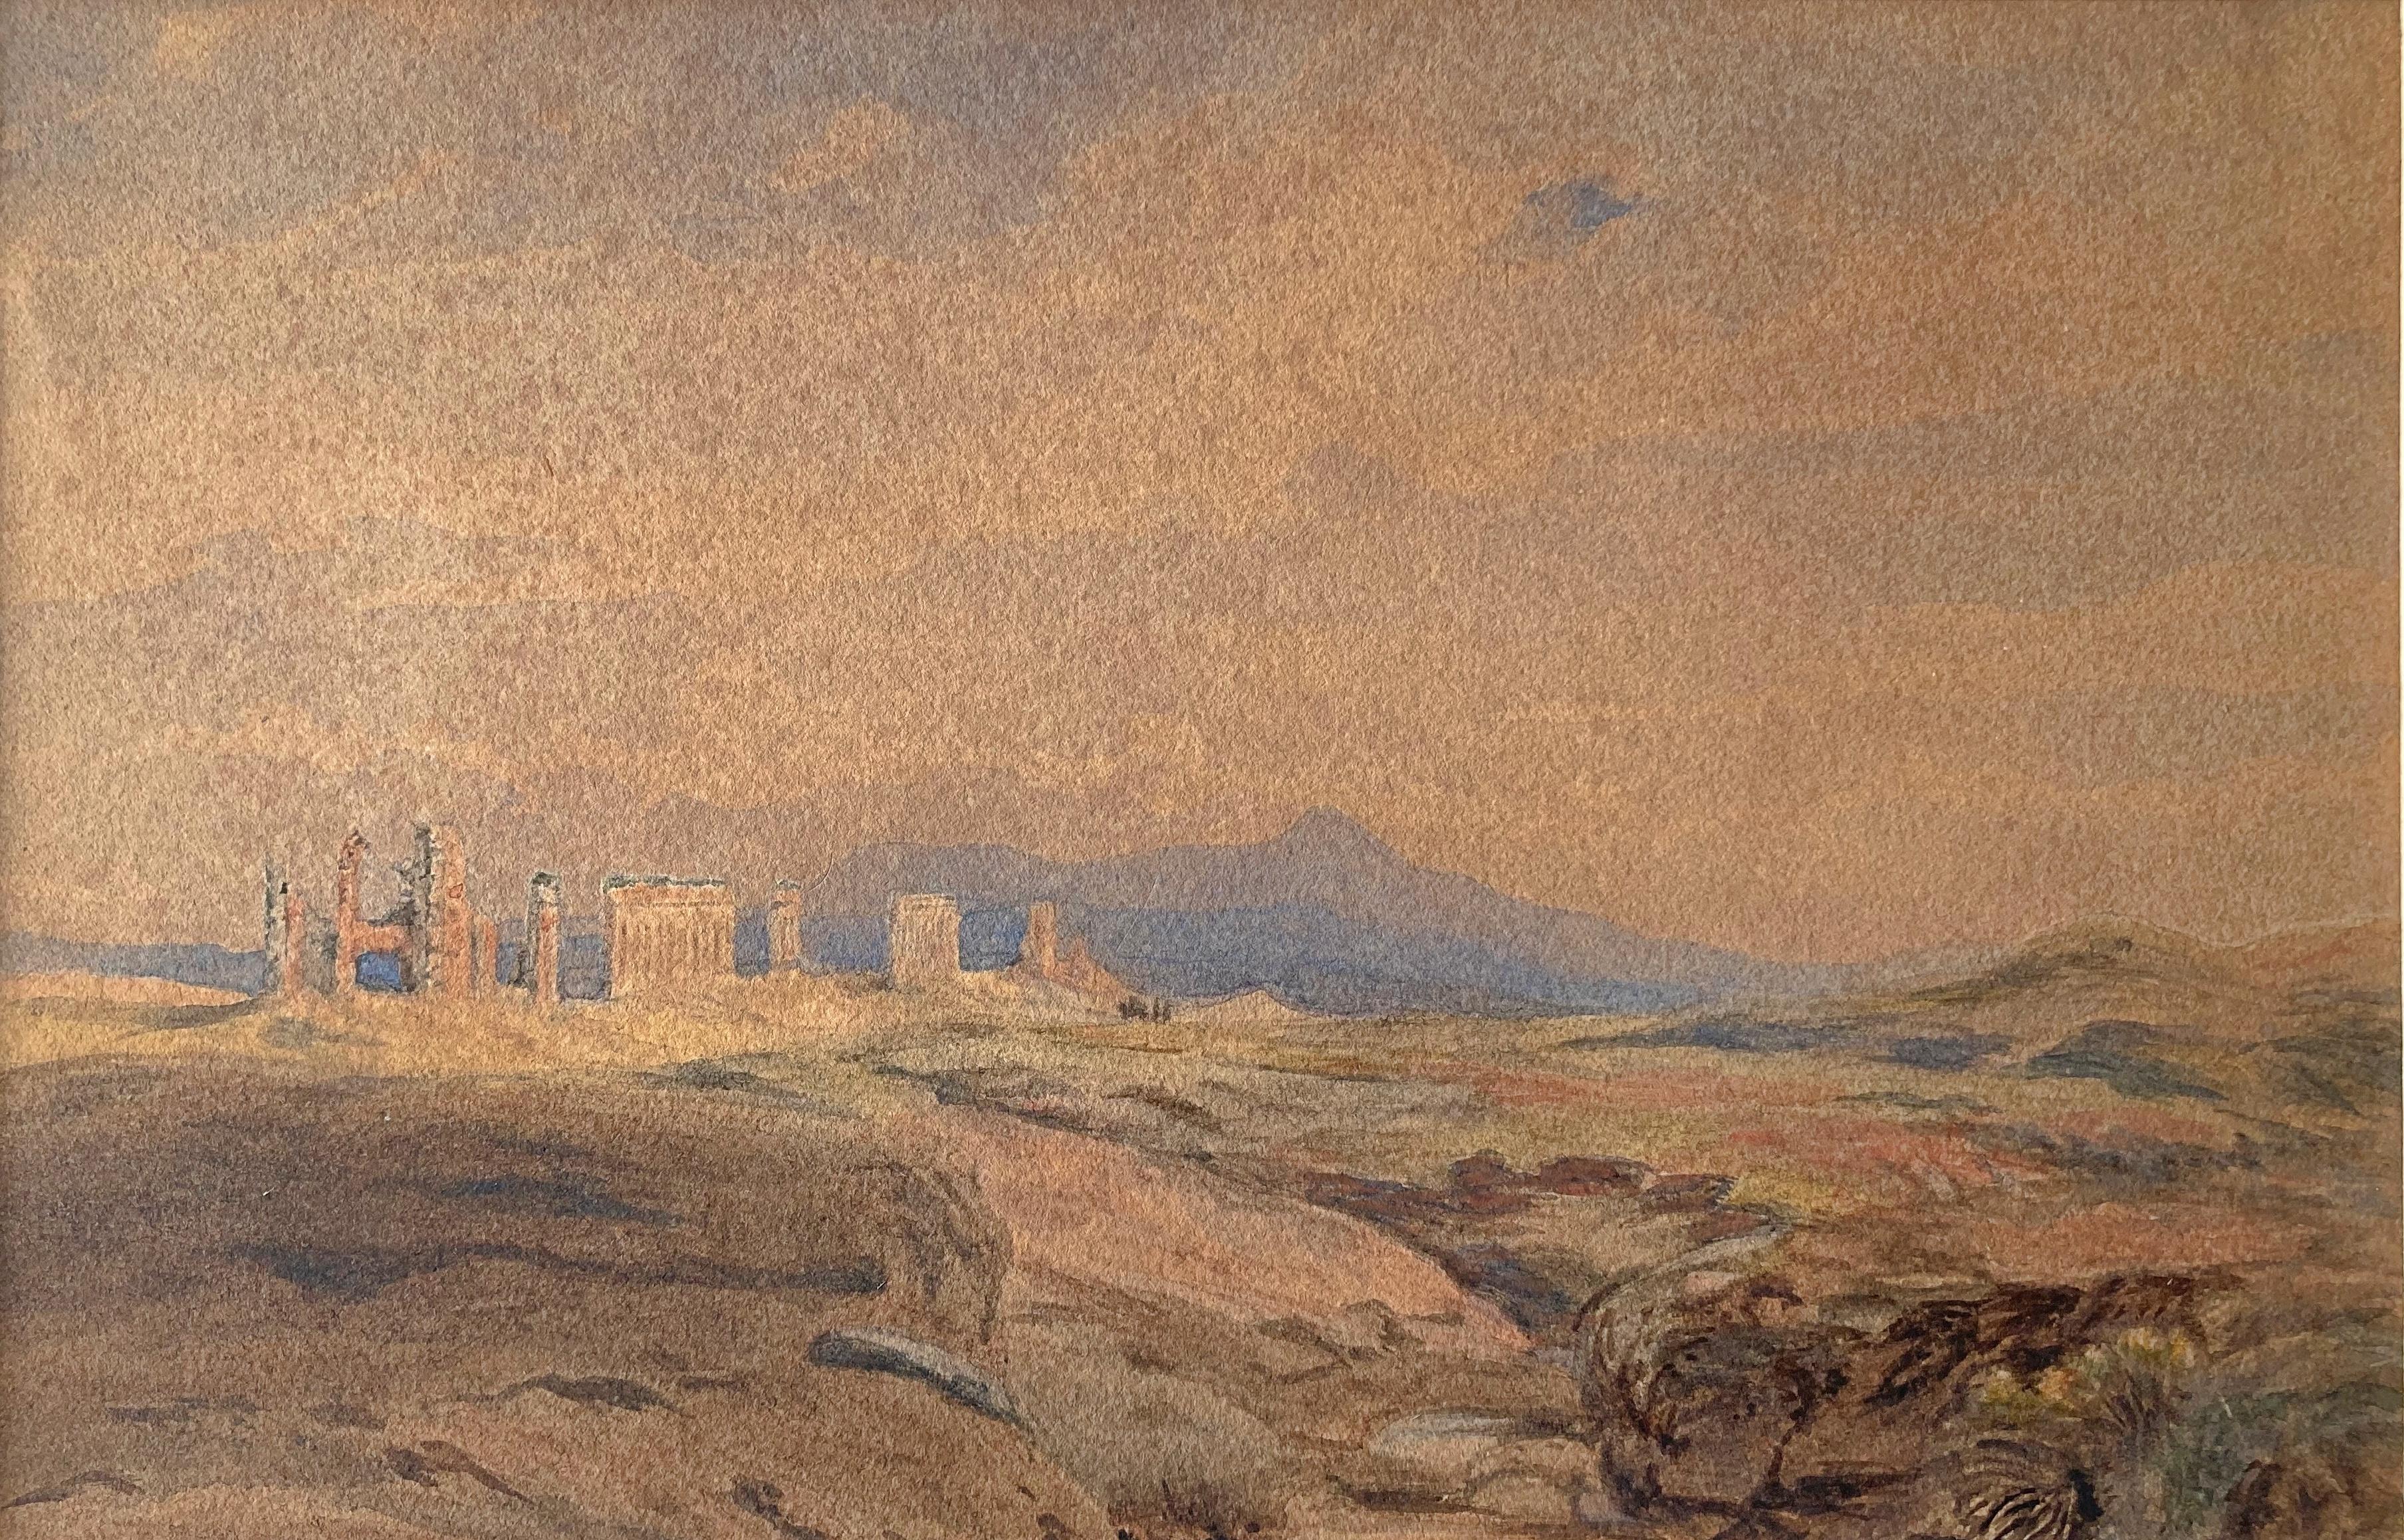 Die meisten Darstellungen der künstlerischen Leistungen von Edward Lear (1812-1888) gehen davon aus, dass er eher als Verfasser von Nonsens-Versen bekannt ist als als topografischer Zeichner und Maler. Seine Kunst wird dann weitgehend isoliert